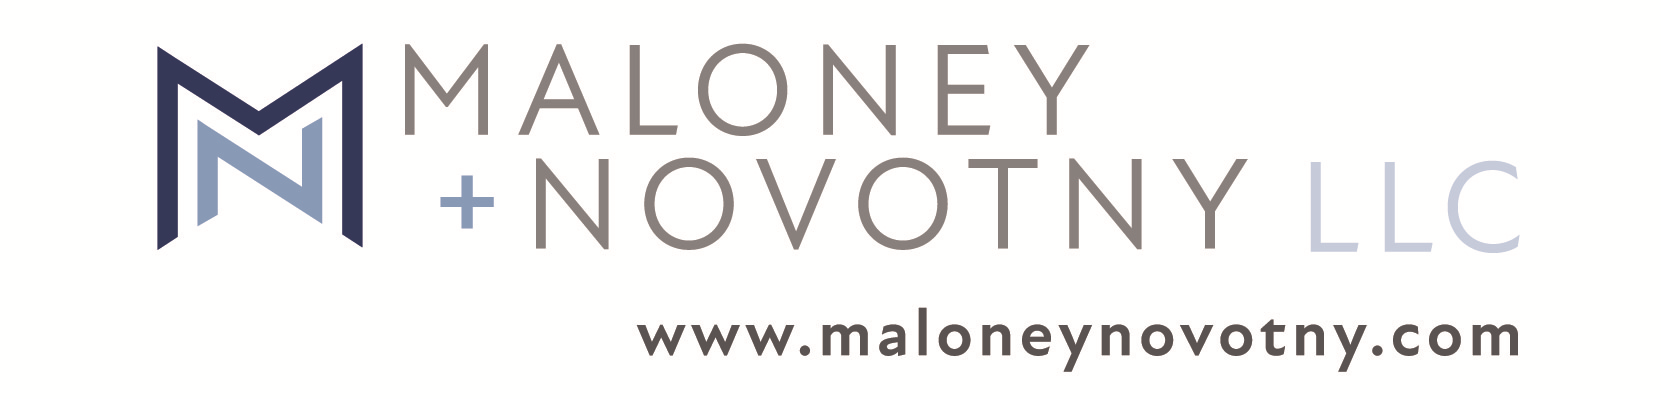 Maloney + Novotny LLC logo